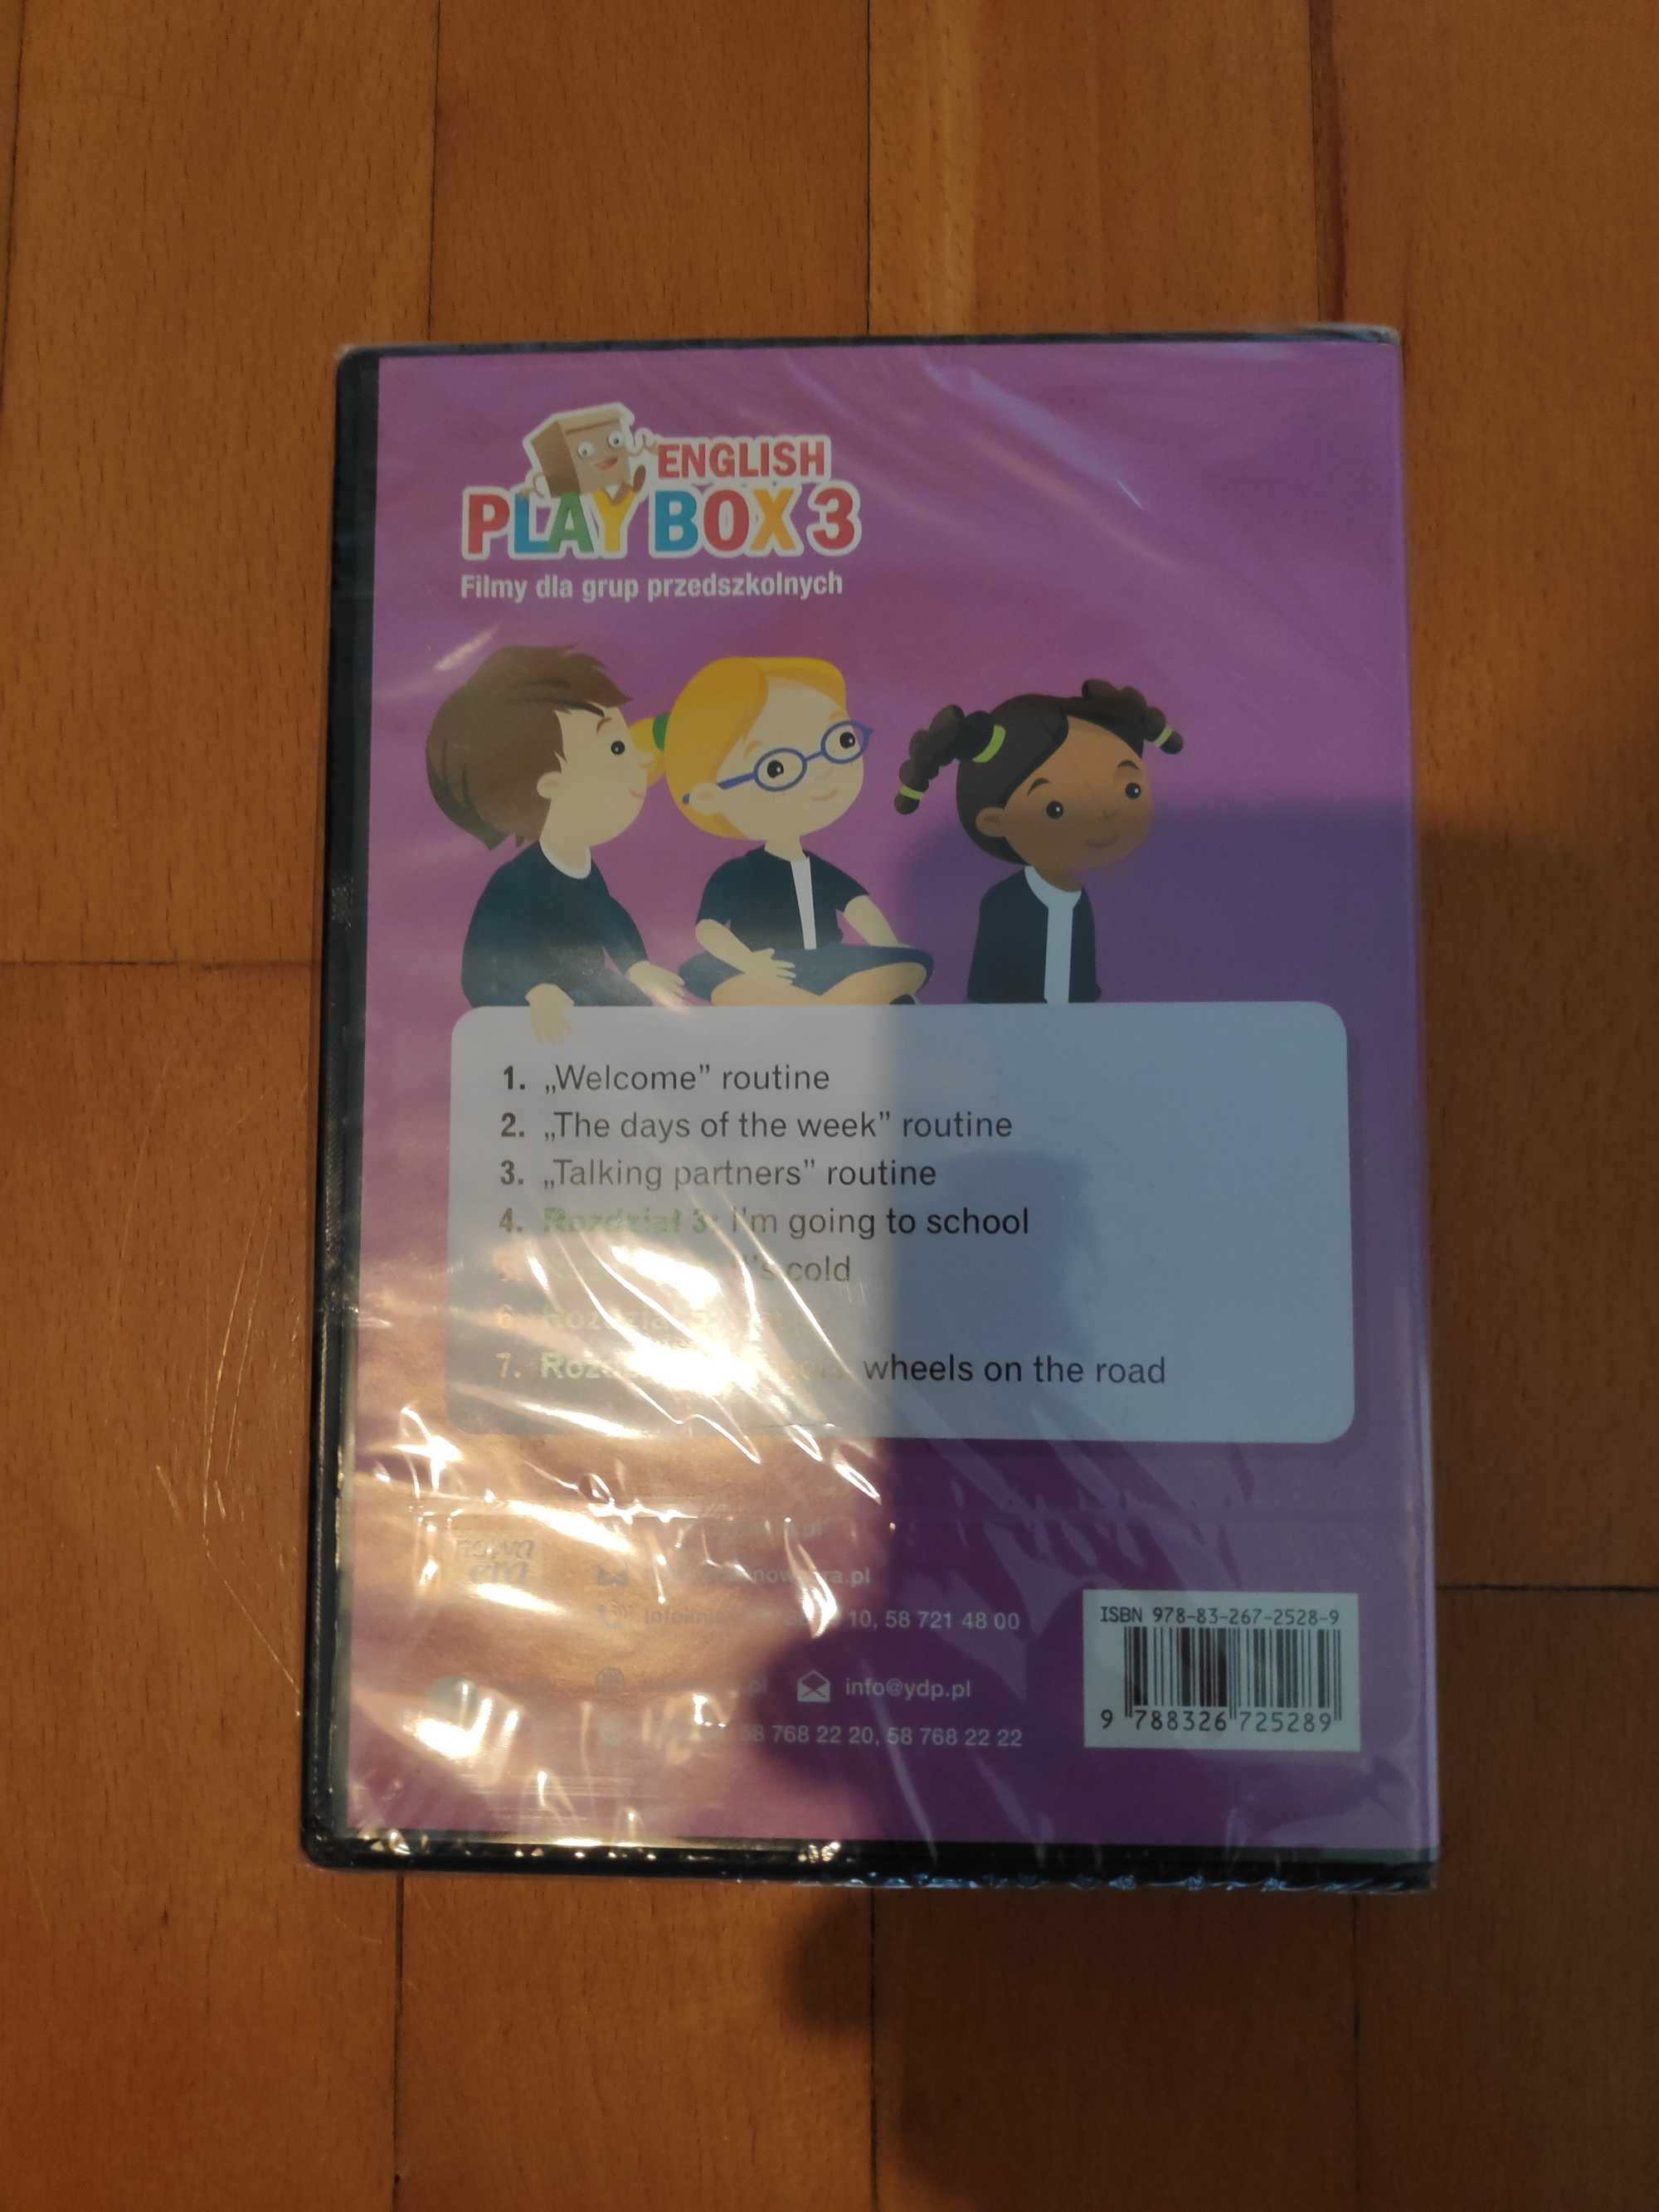 English Play Box 3 - Film dla grup przedszkolnych